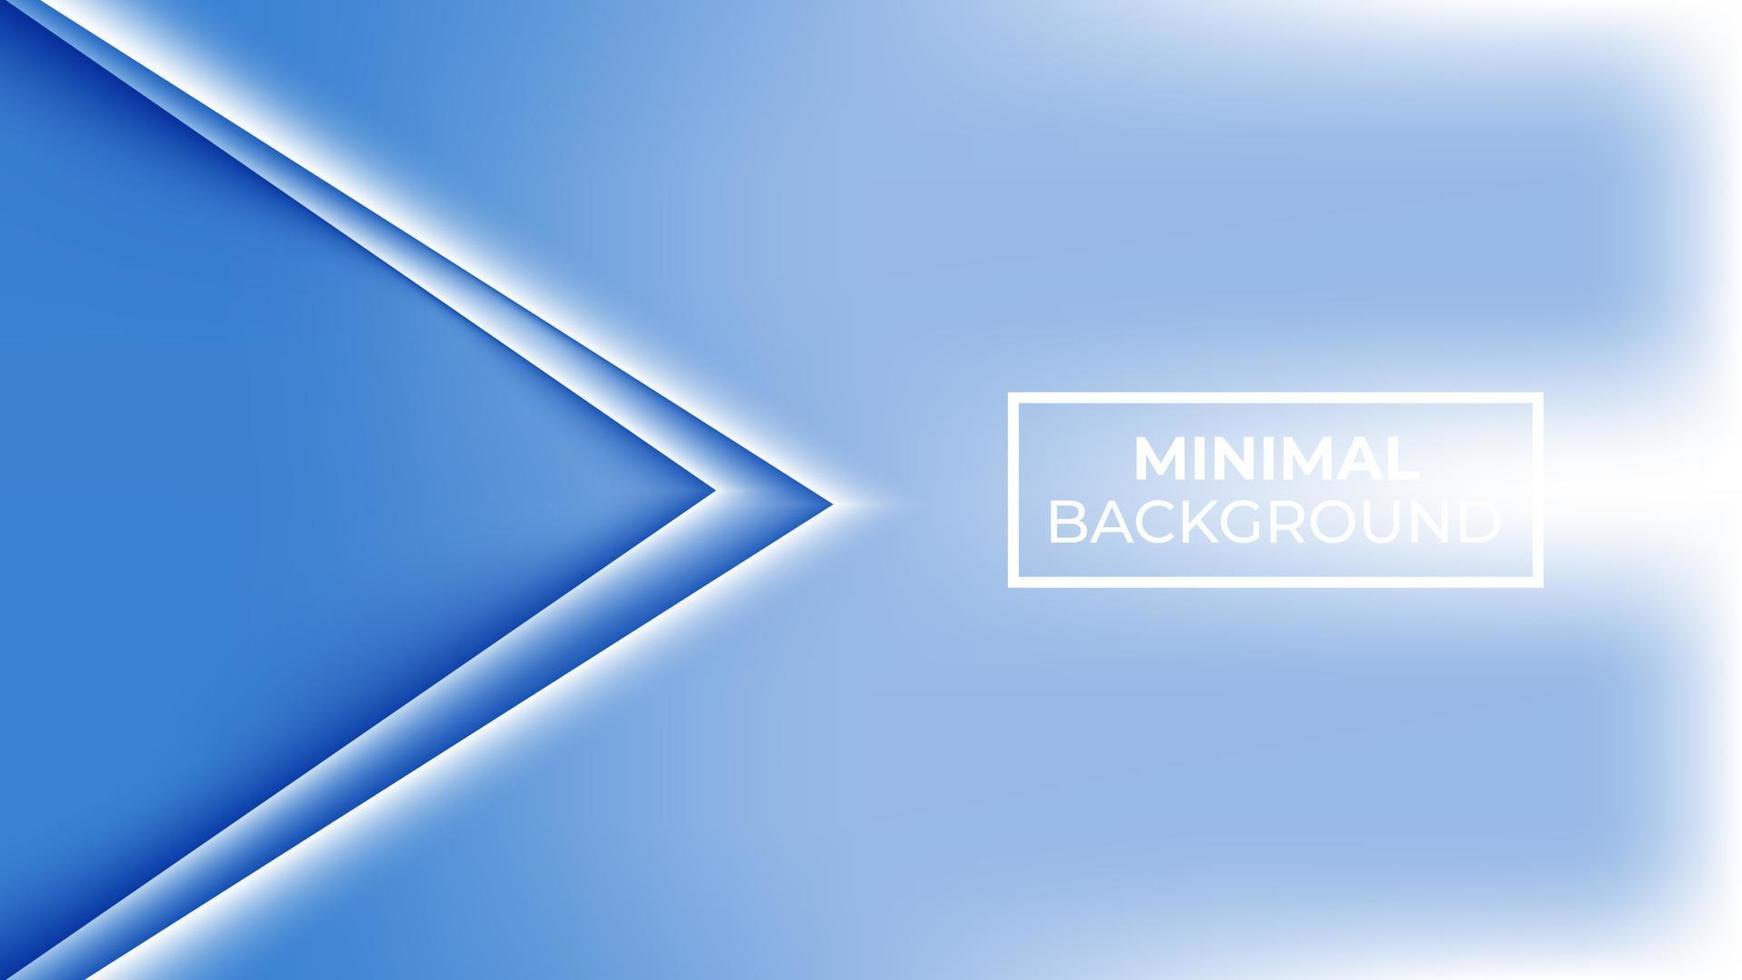 couleur bleue de fond minimale et les deux triangles qui se chevauchent sont blancs, faciles à modifier vecteur